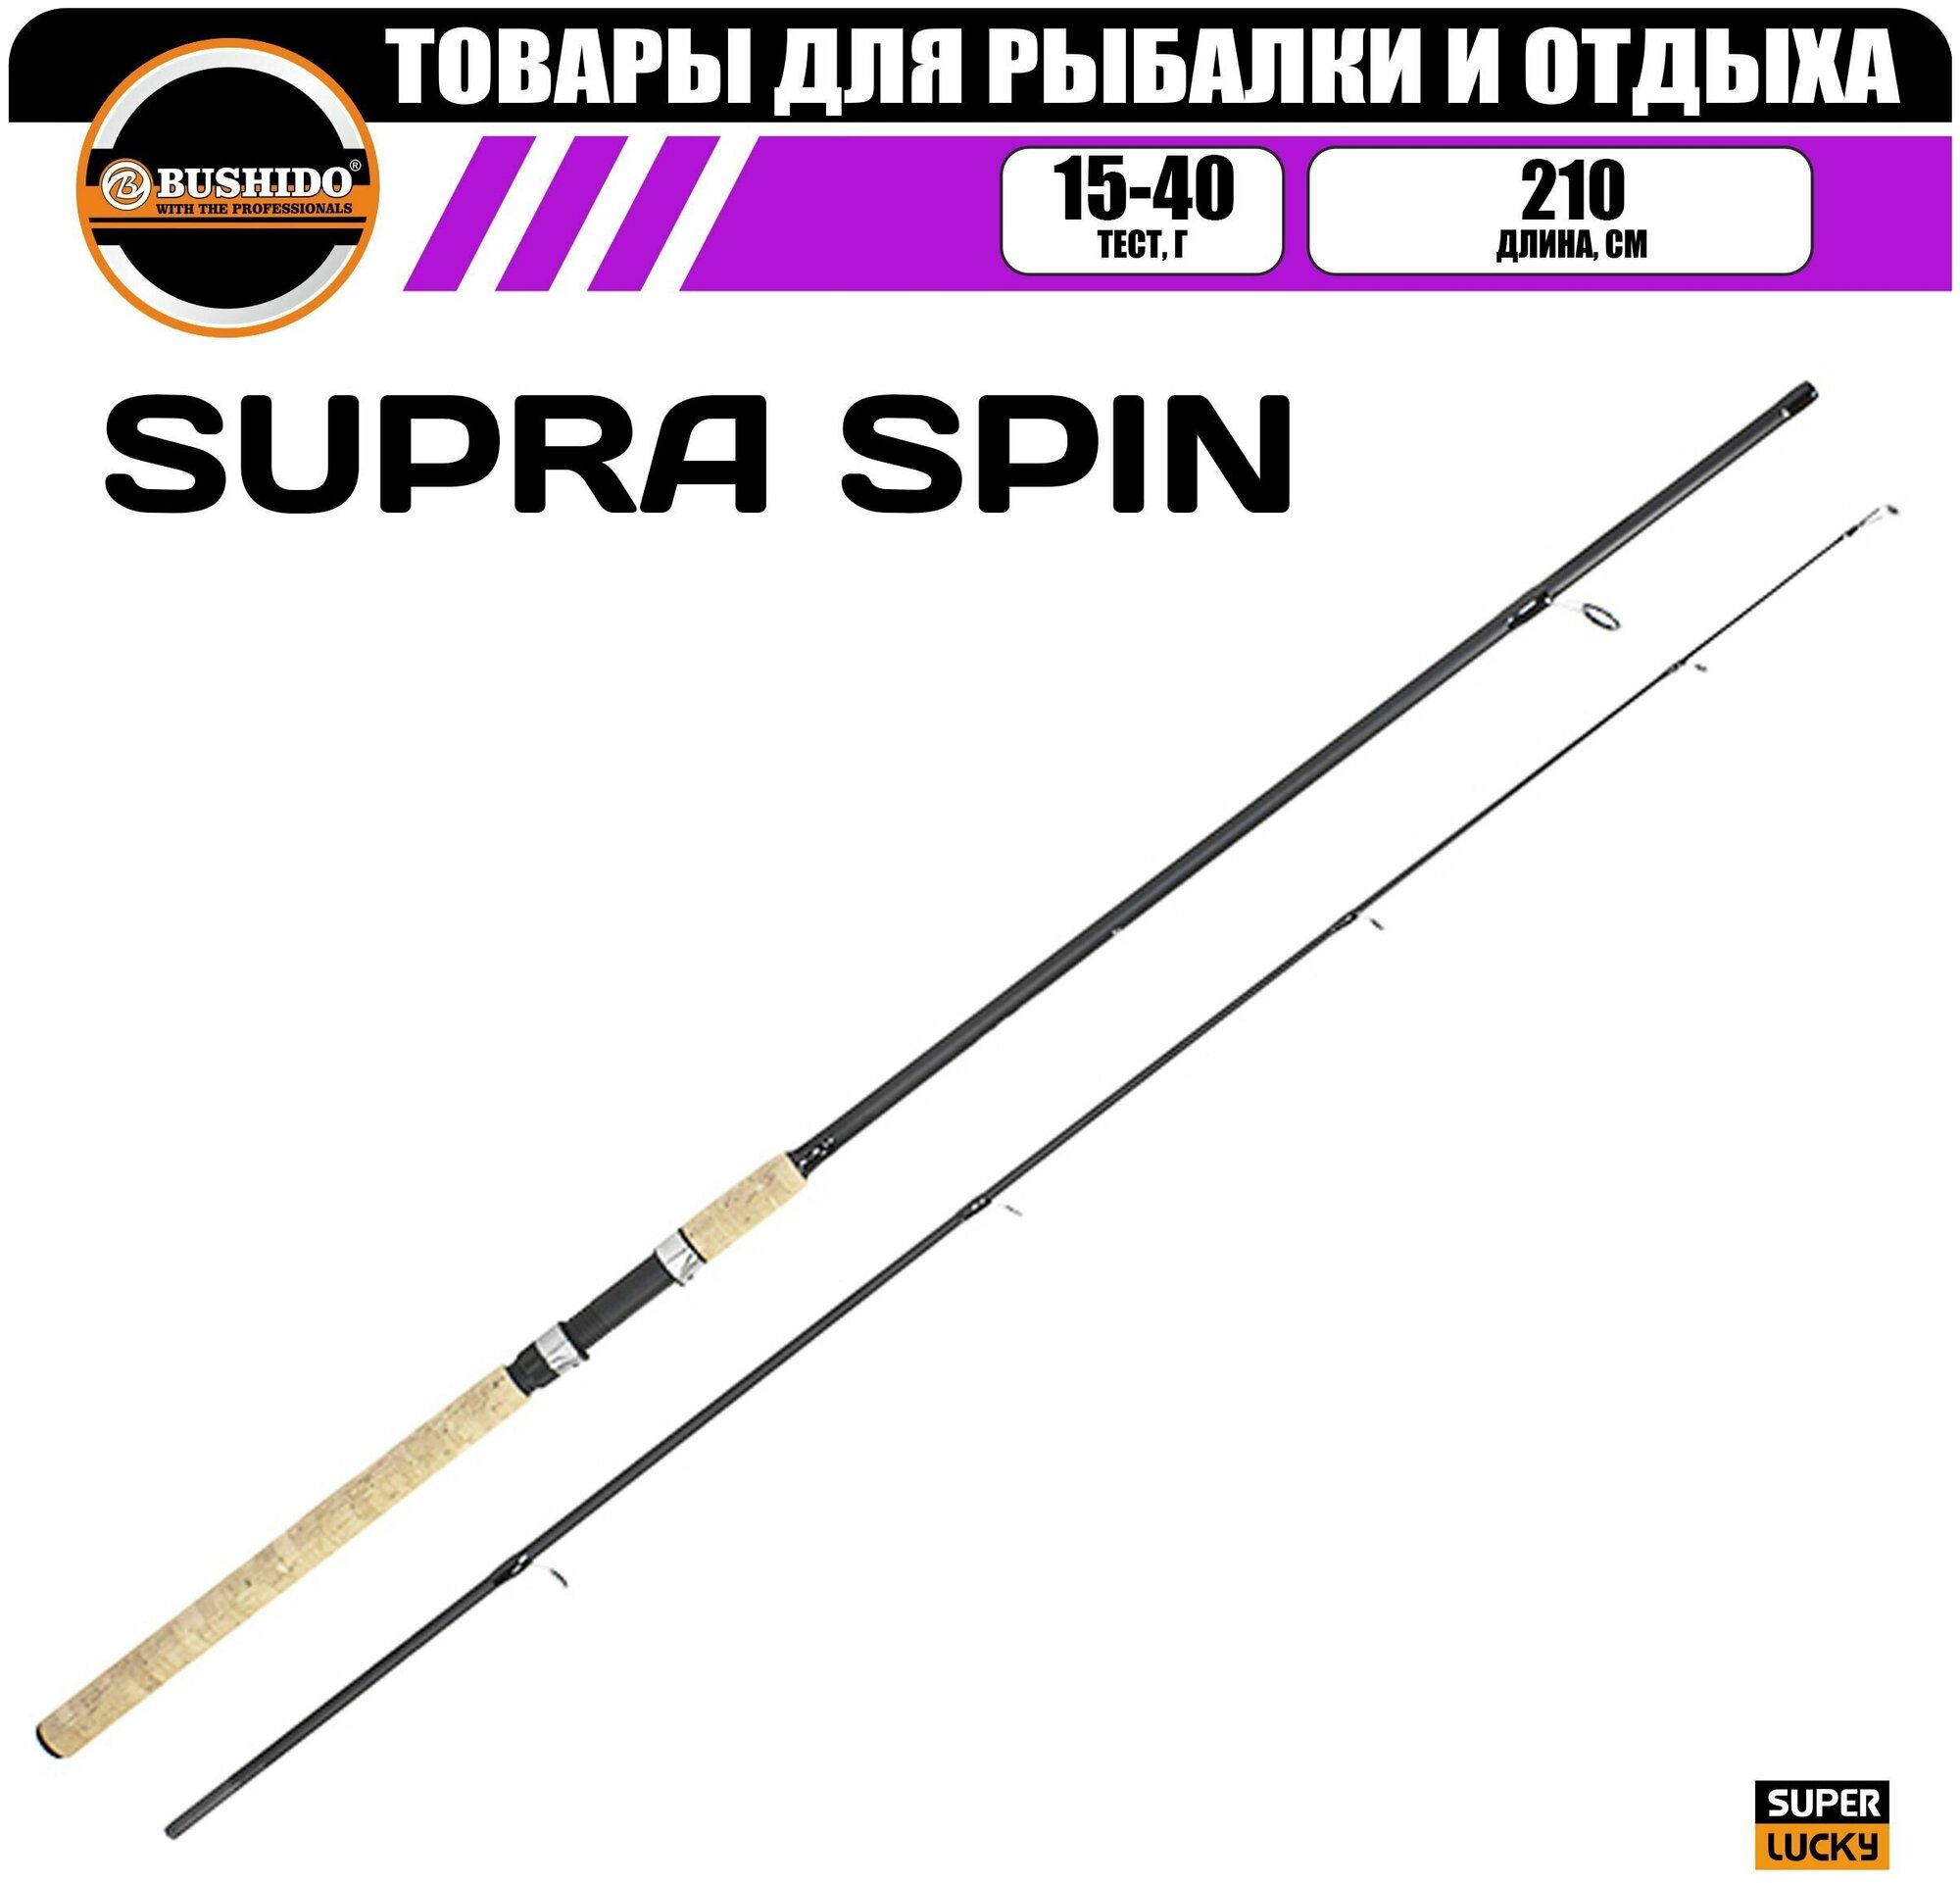 Спиннинг рыболовный BUSHIDO SUPRA 2.10м (15-40гр), материал - fiberglass, штекерная конструкция, для рыбалки, средний (regular) строй